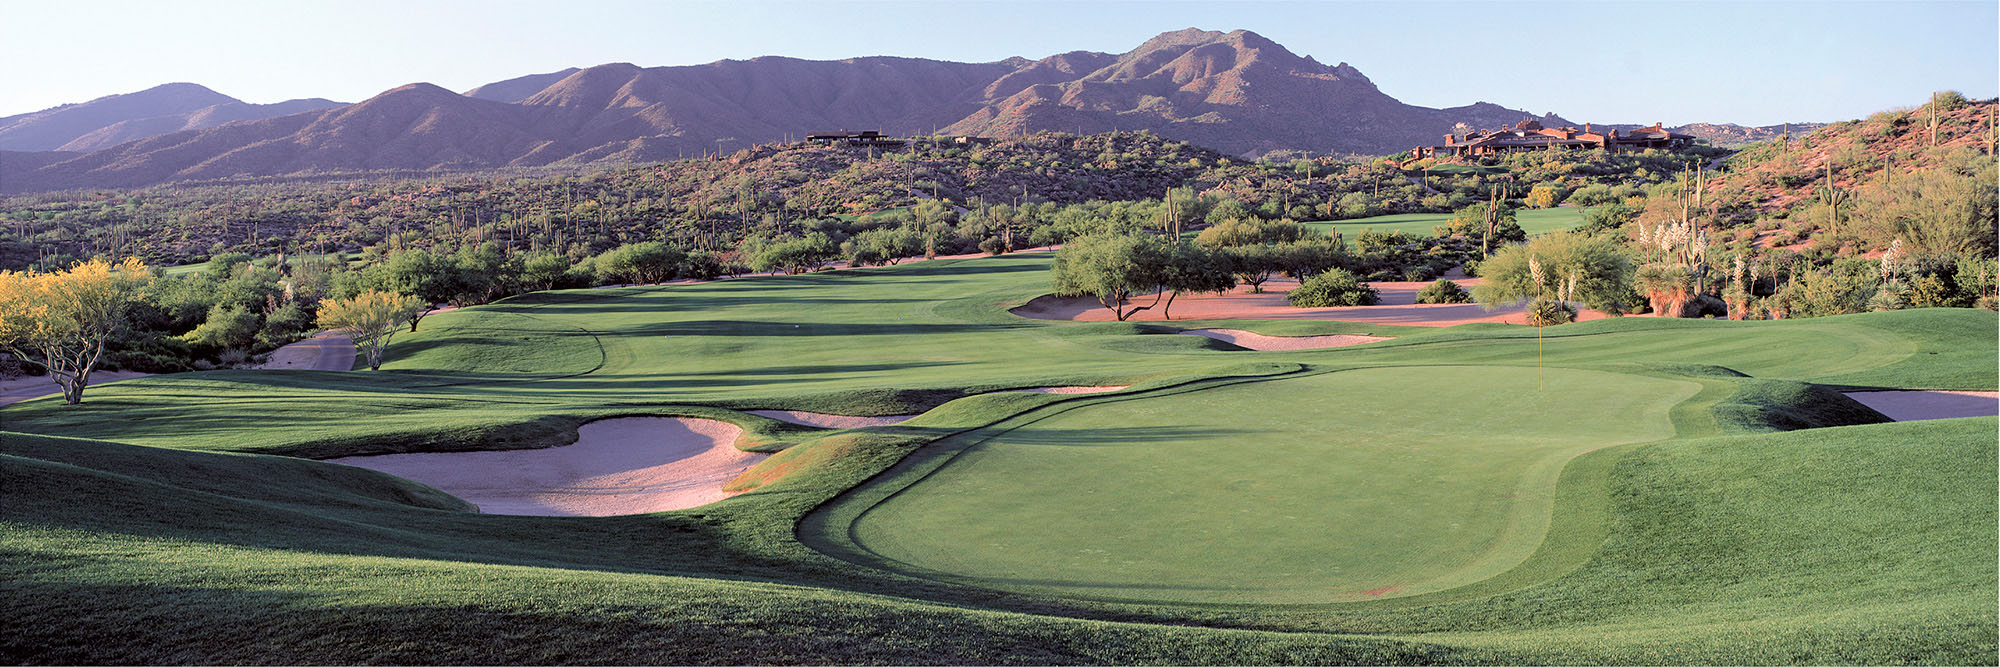 Golf Course Image - Desert Mountain Geronimo No. 1